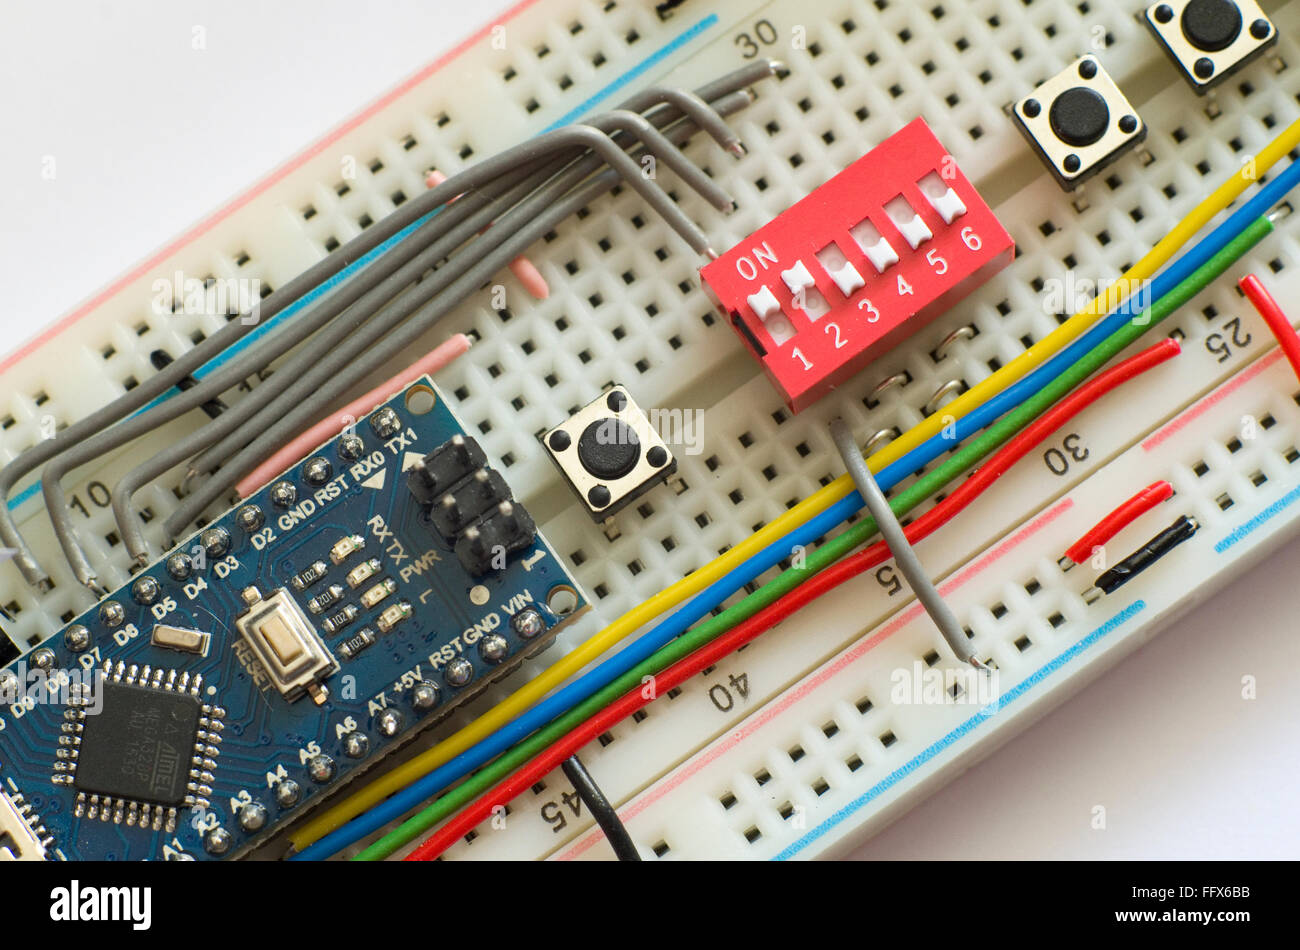 Elektronik Prototyping Board (Steckbrett) mit einem Arduino Pro Mini-Klon und ein Sortiment an Schaltern und Drähte. Stockfoto